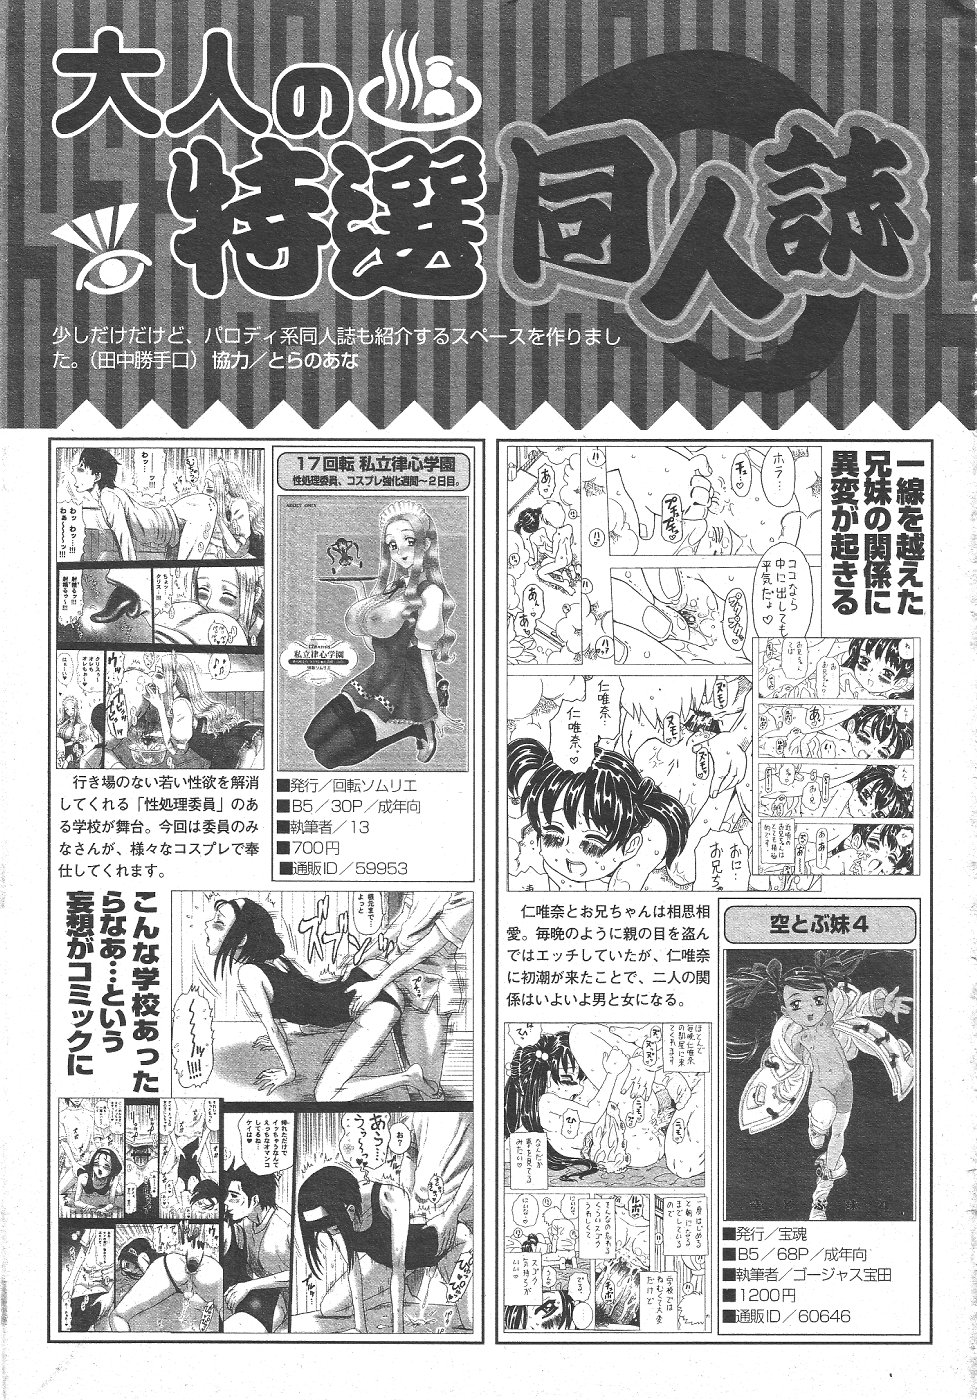 月刊COMIC夢雅 2004年6月号 VOL.10